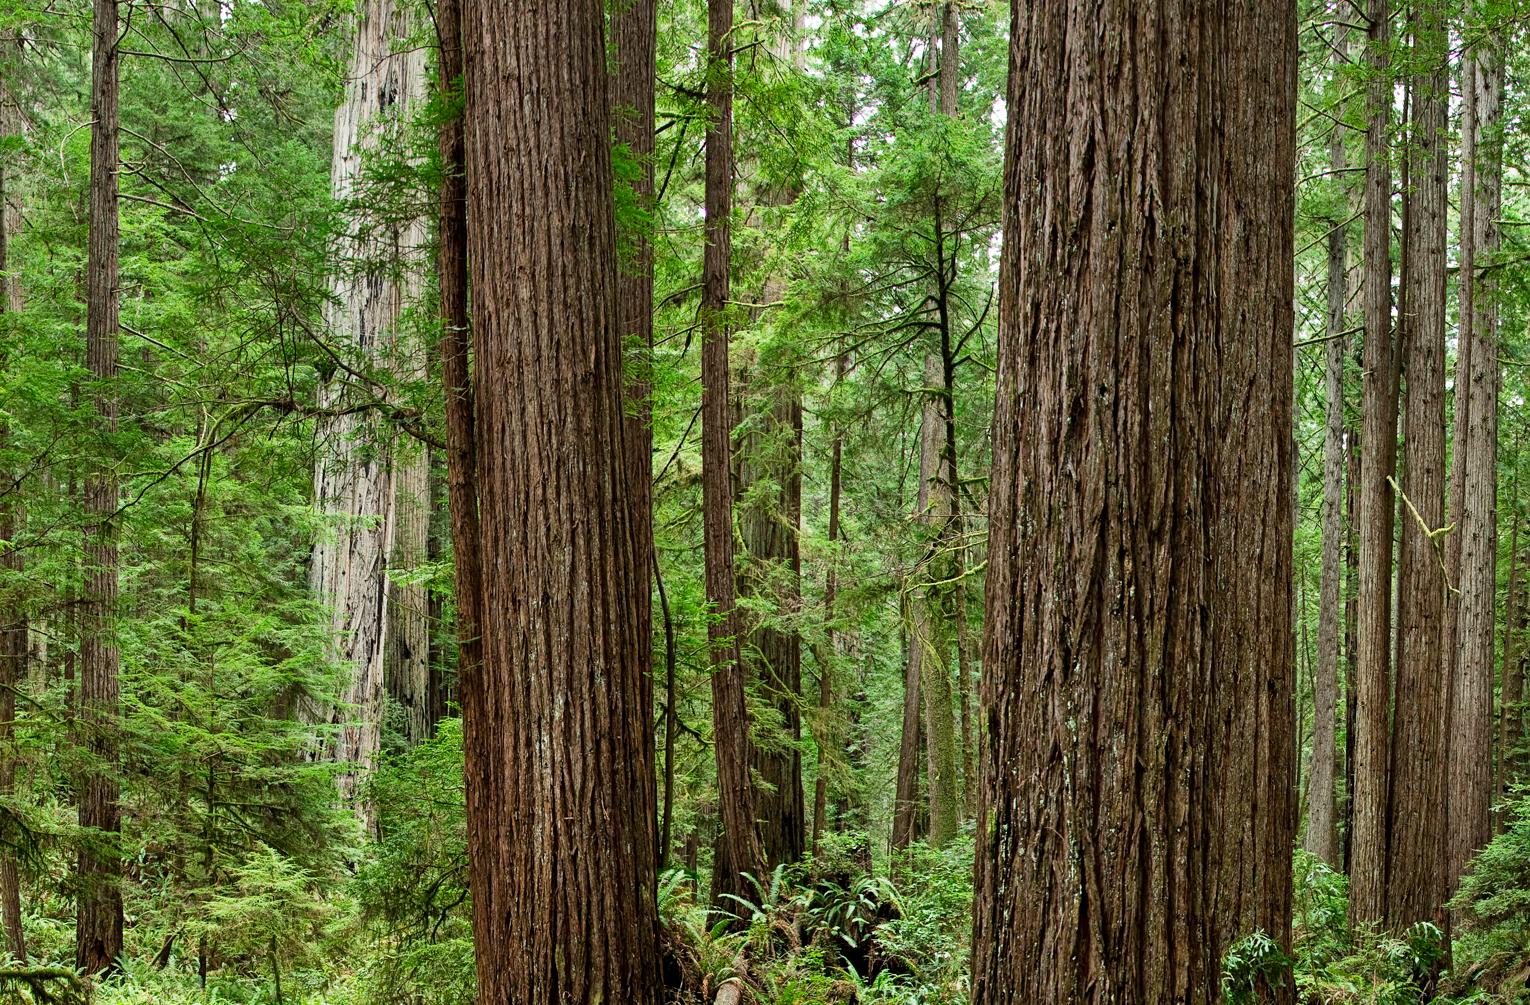 Redwoods par Erik Pawassar  

42 x 117 pouces (107 x 298cm)
édition signée de 7

48 x 135 pouces (122 x 343cm)
six panneaux de 48 x 22.5 pouces
édition signée de 7

79 x 224 cm (31 x 88 pouces) 
édition signée de 7

impression pigmentaire d'art